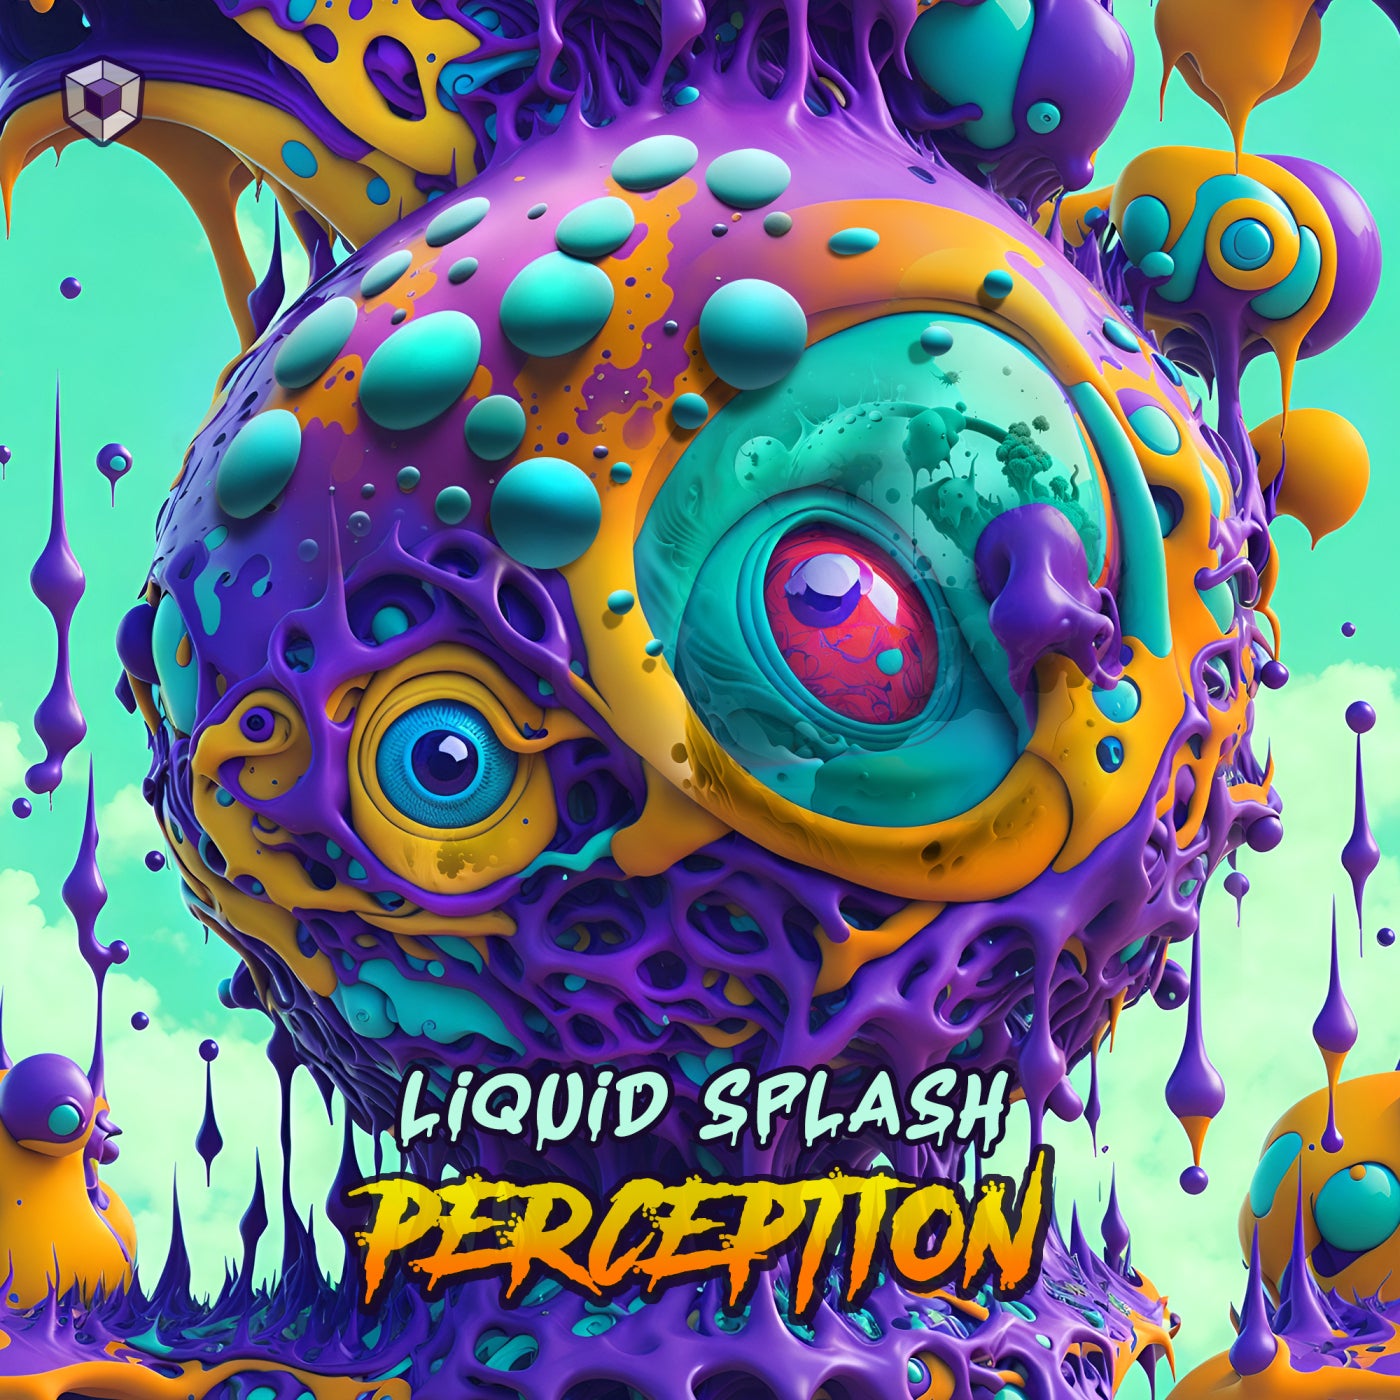 Liquid Splash